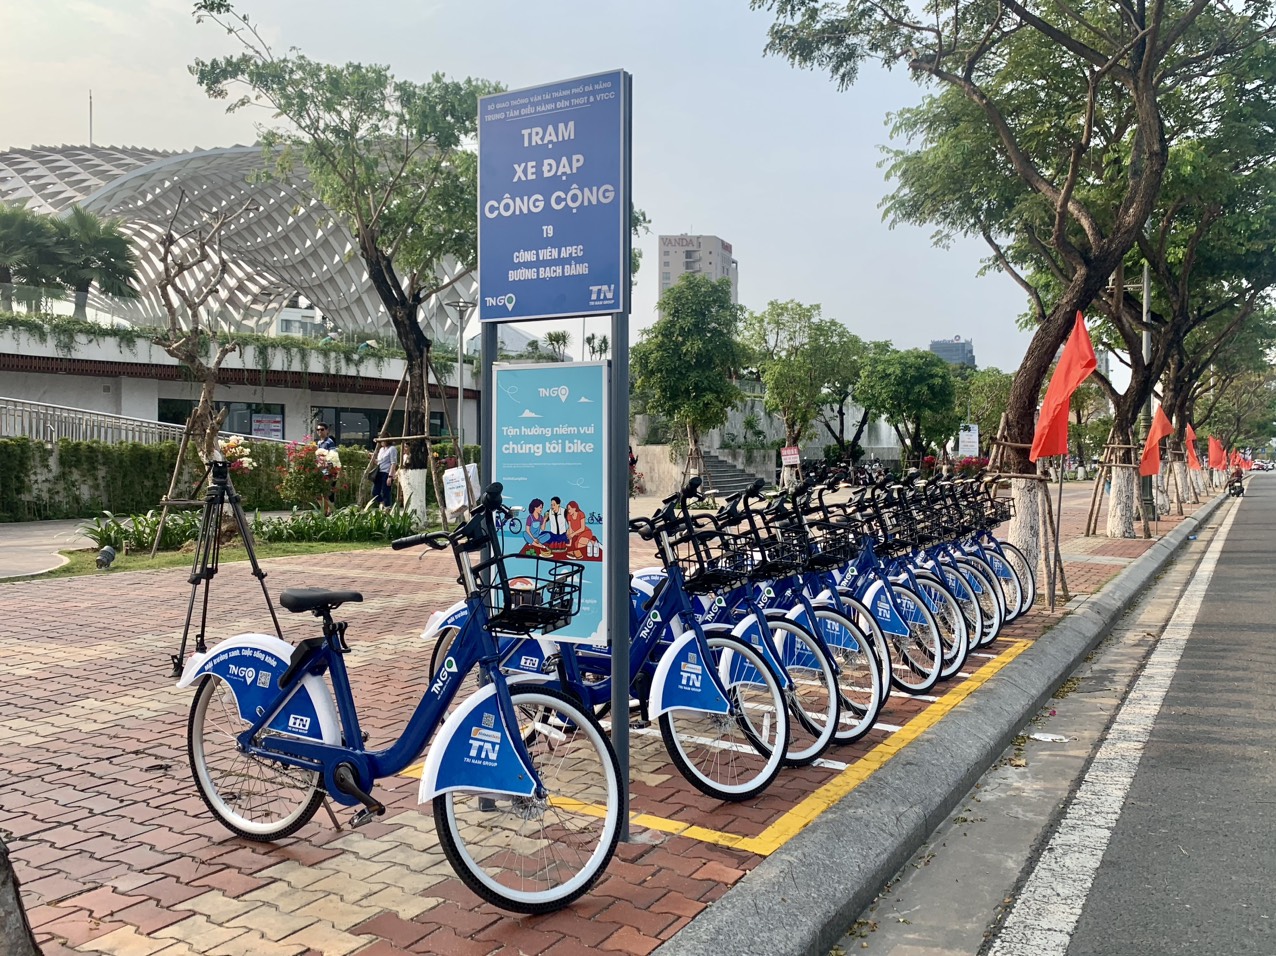 Thành phố Đà Nẵng triển khai thí điểm trạm xe đạp công cộng  Giao thông   Vietnam VietnamPlus